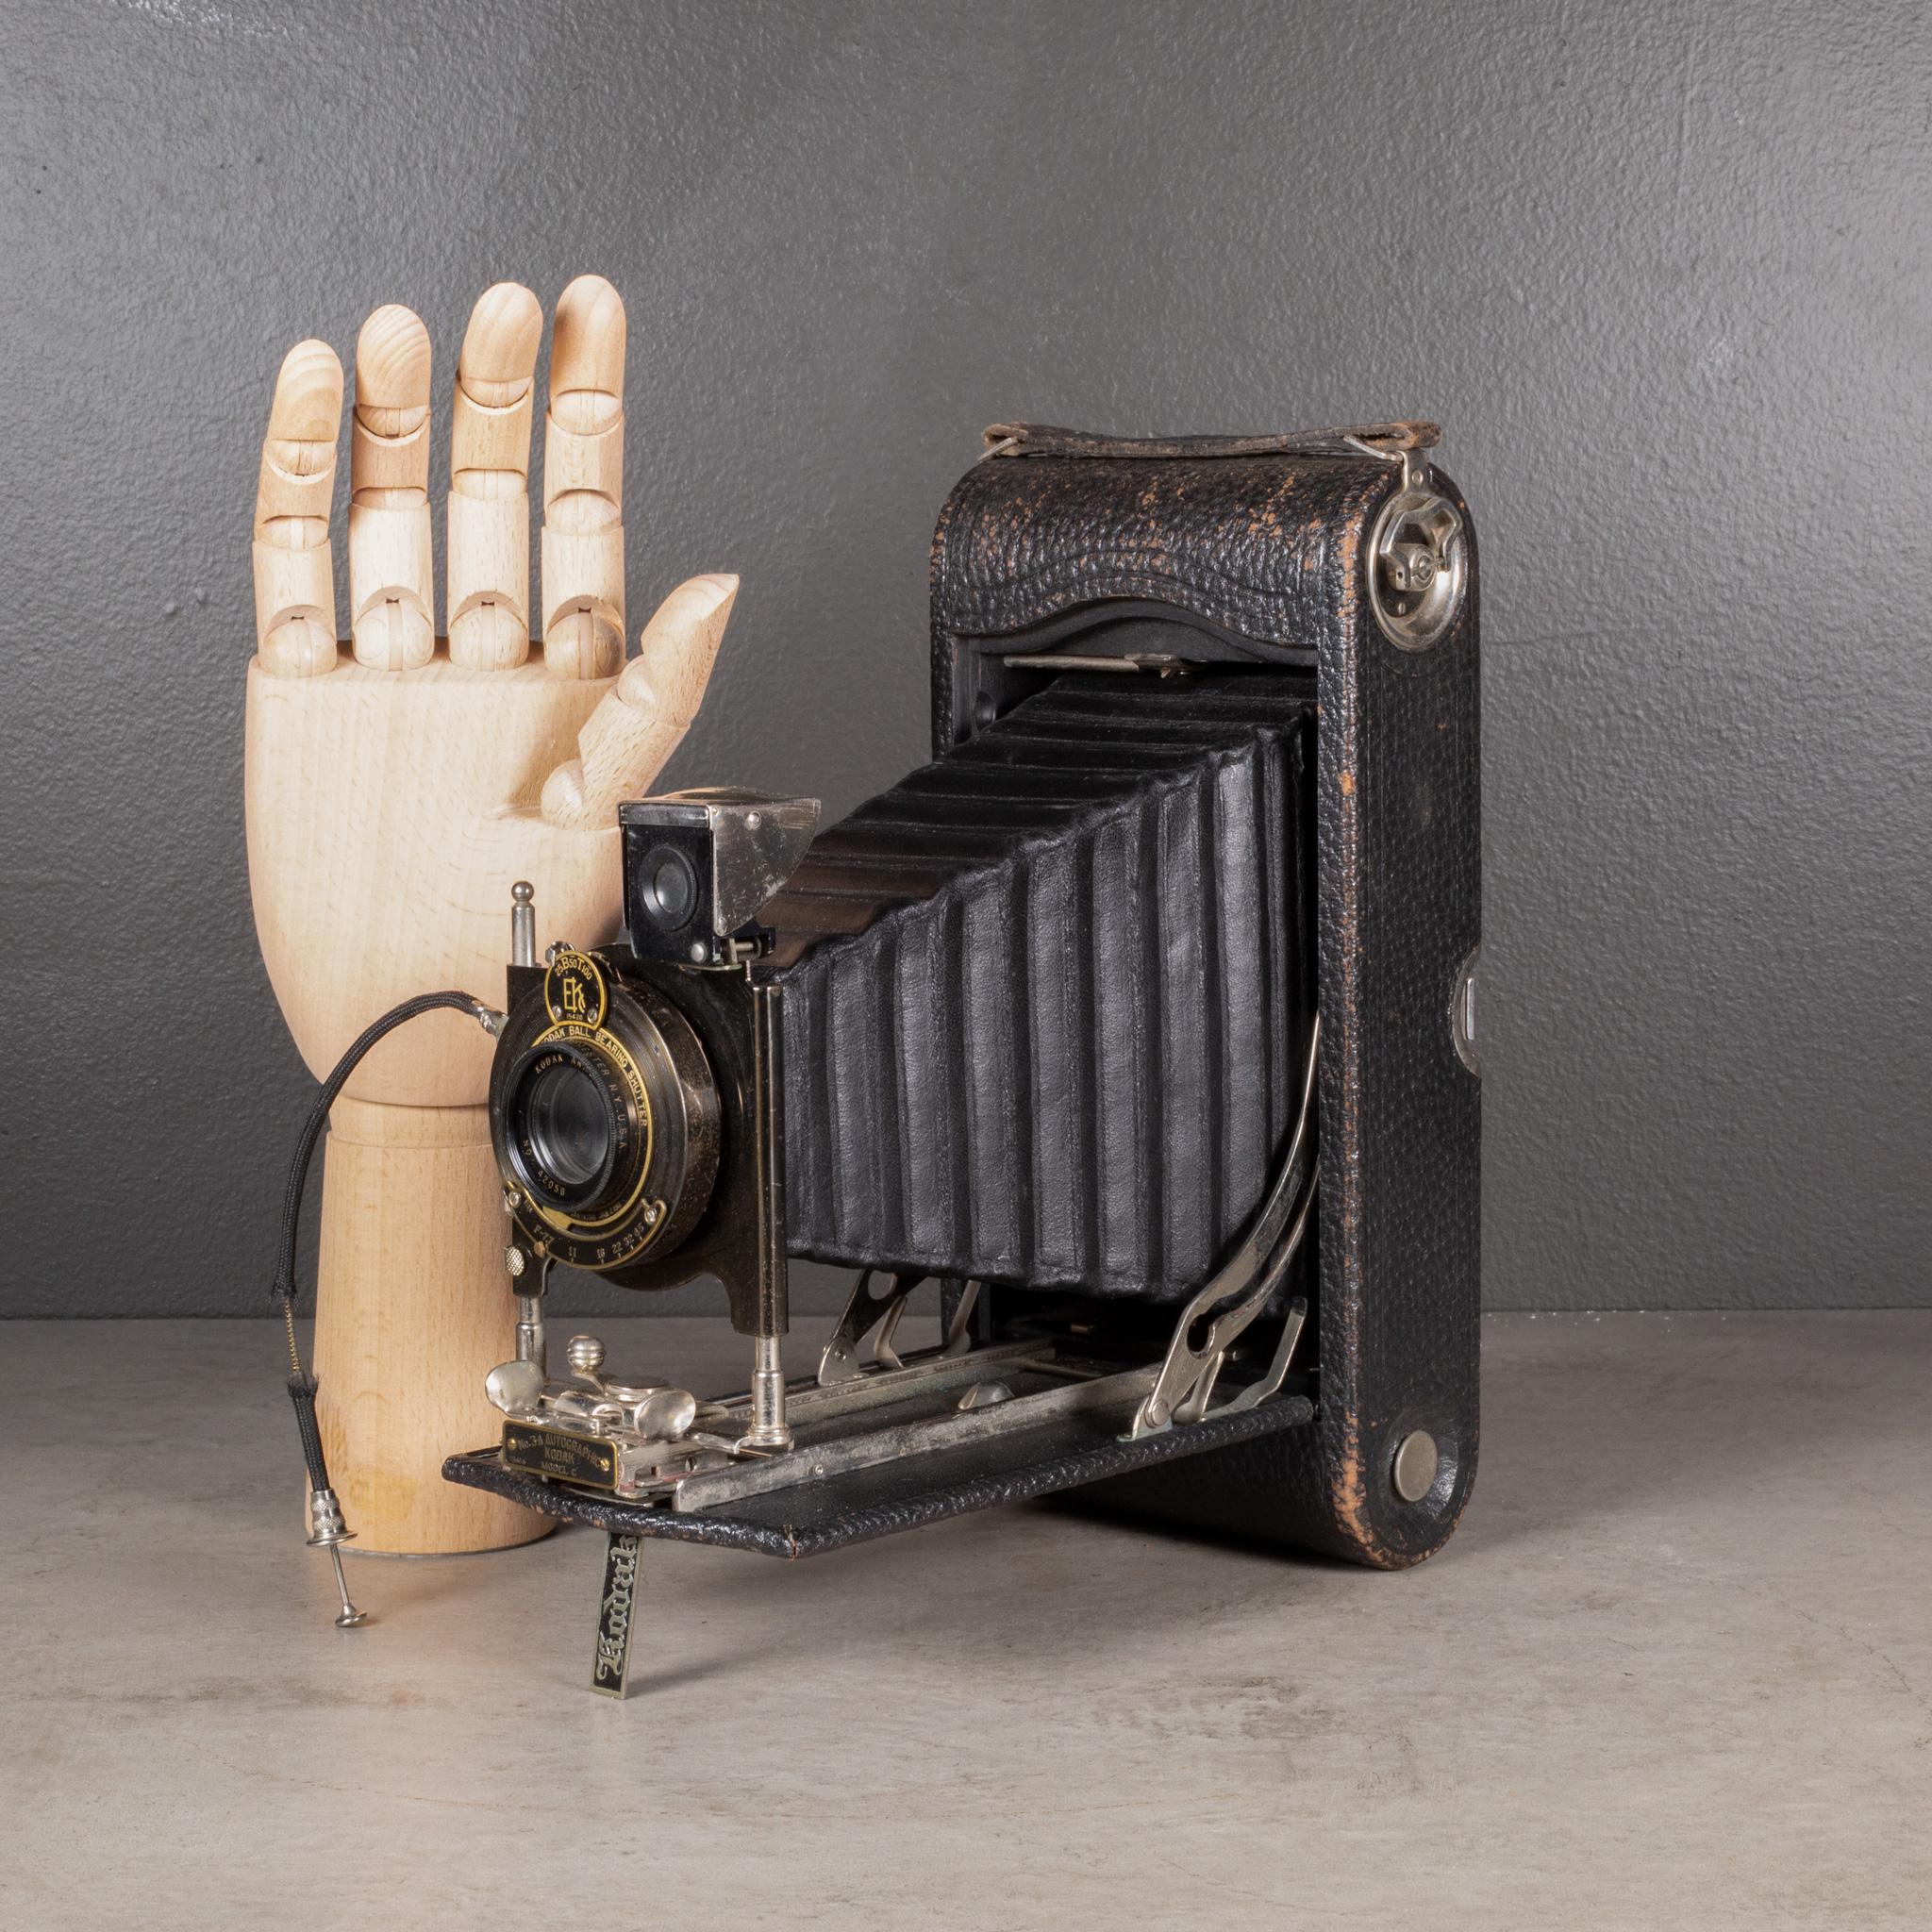 À PROPOS DE

Un grand appareil photo pliant Eastman Kodak No. 3A. Le corps est enveloppé de cuir avec des accents de métal noir, de chrome et de laiton sur la lentille. L'appareil photo est doté d'un cordon pour le bouton d'obturateur à main et se